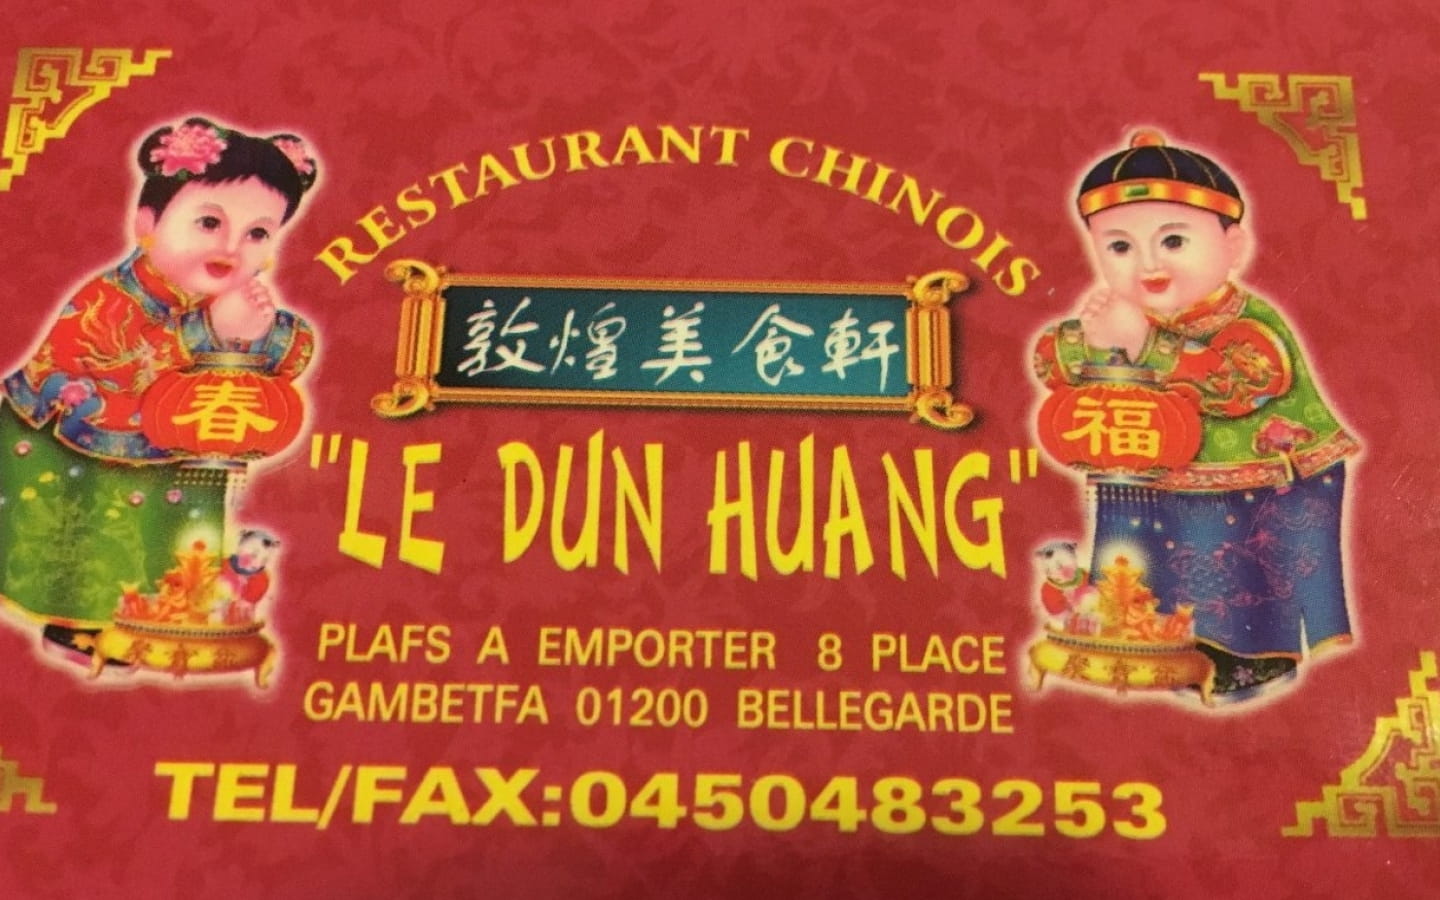 Restaurant Le Dun Huang